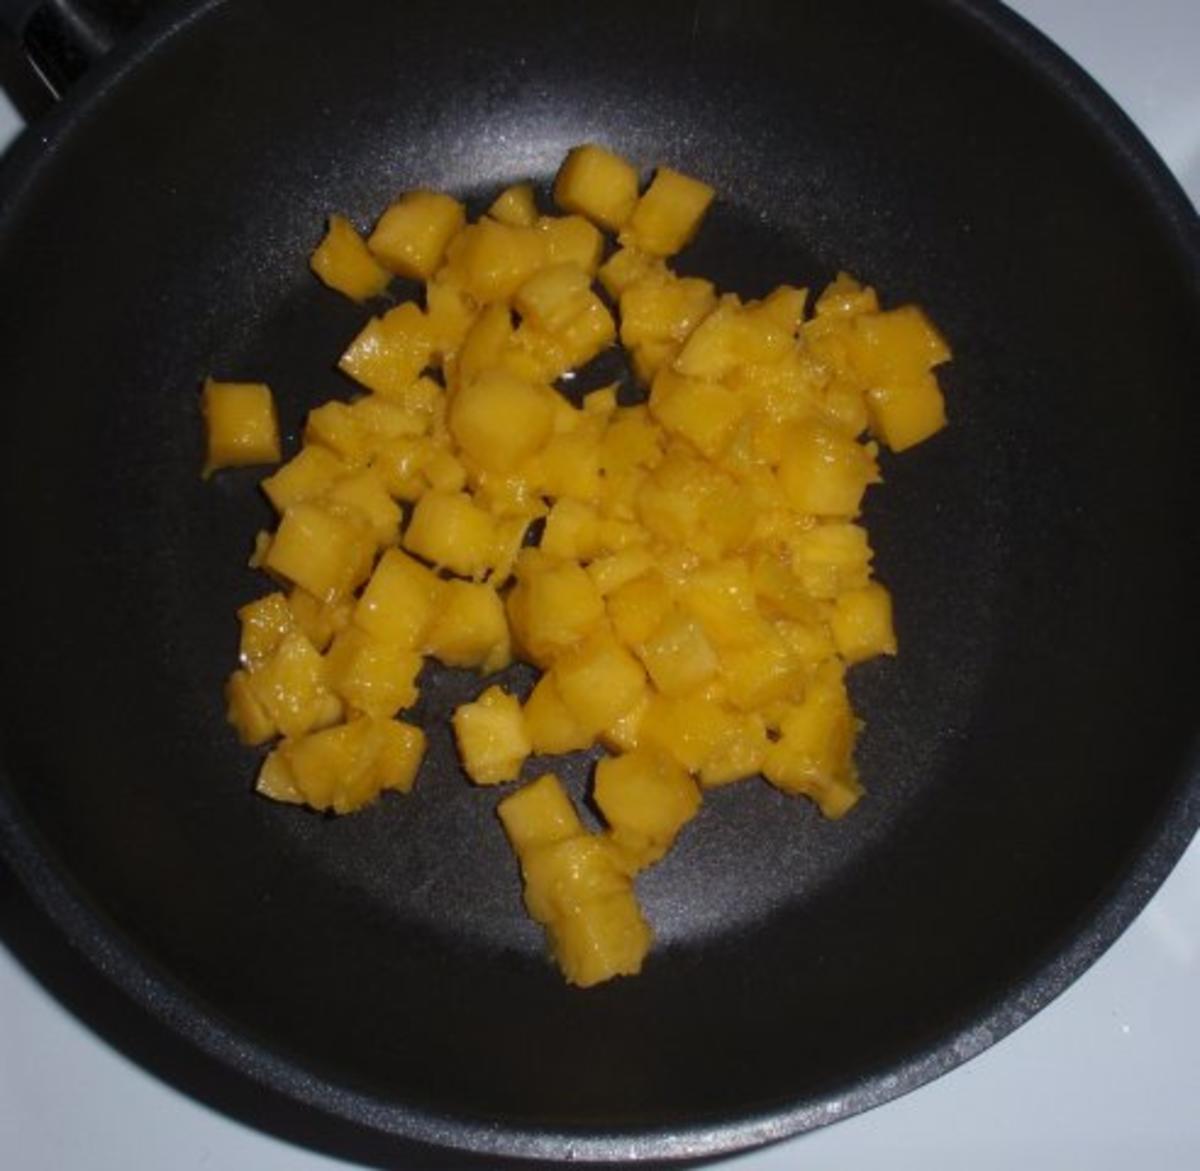 Herziges Frühstücksmüsli mit karamellisierten Mangostückchen - Rezept - Bild Nr. 4